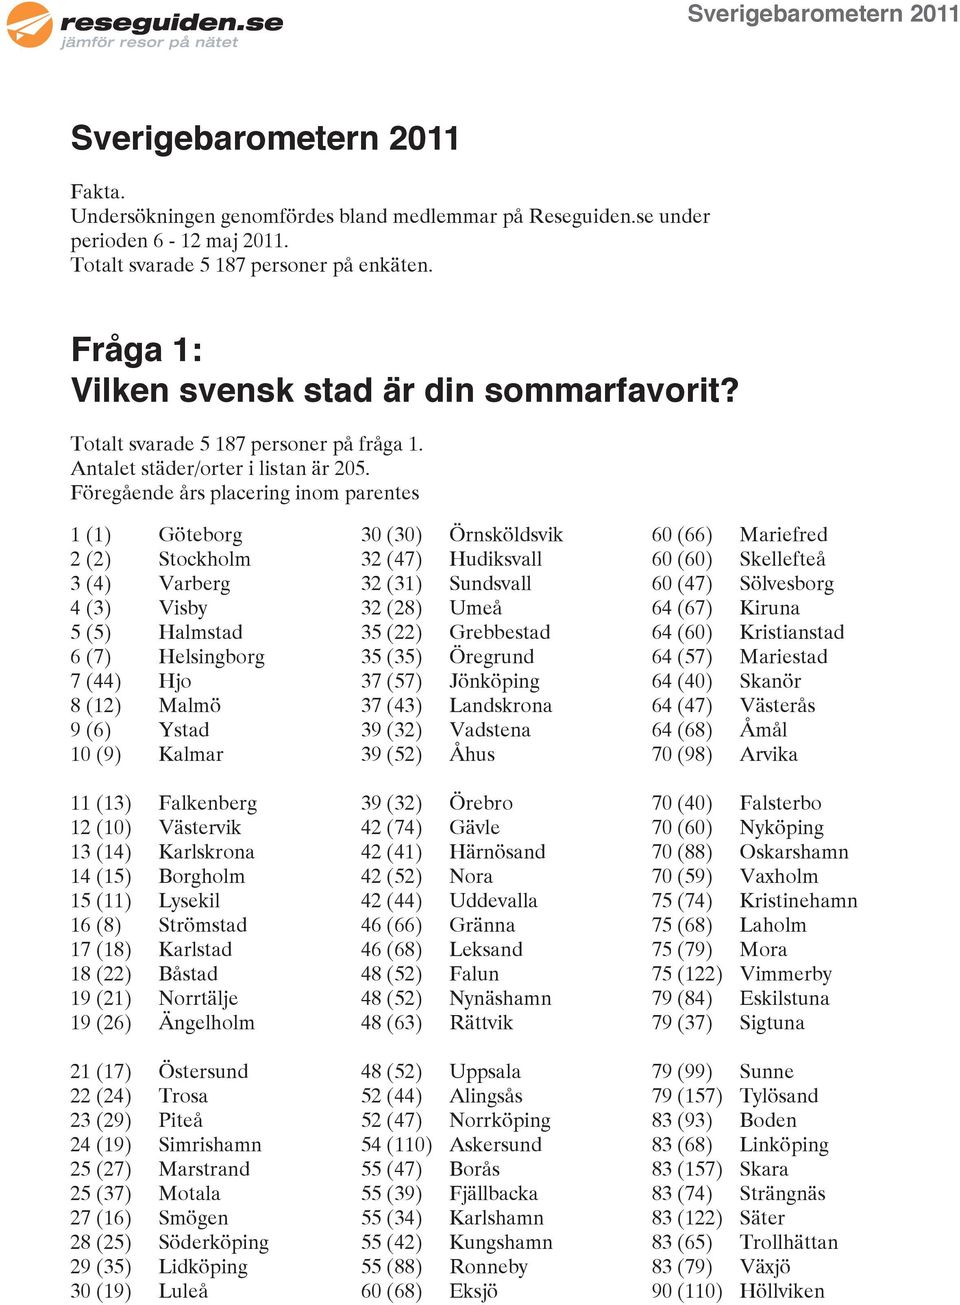 Föregående års placering inom parentes 1 (1) Göteborg 2 (2) Stockholm 3 (4) Varberg 4 (3) Visby 5 (5) Halmstad 6 (7) Helsingborg 7 (44) Hjo 8 (12) Malmö 9 (6) Ystad 10 (9) Kalmar 11 (13) Falkenberg